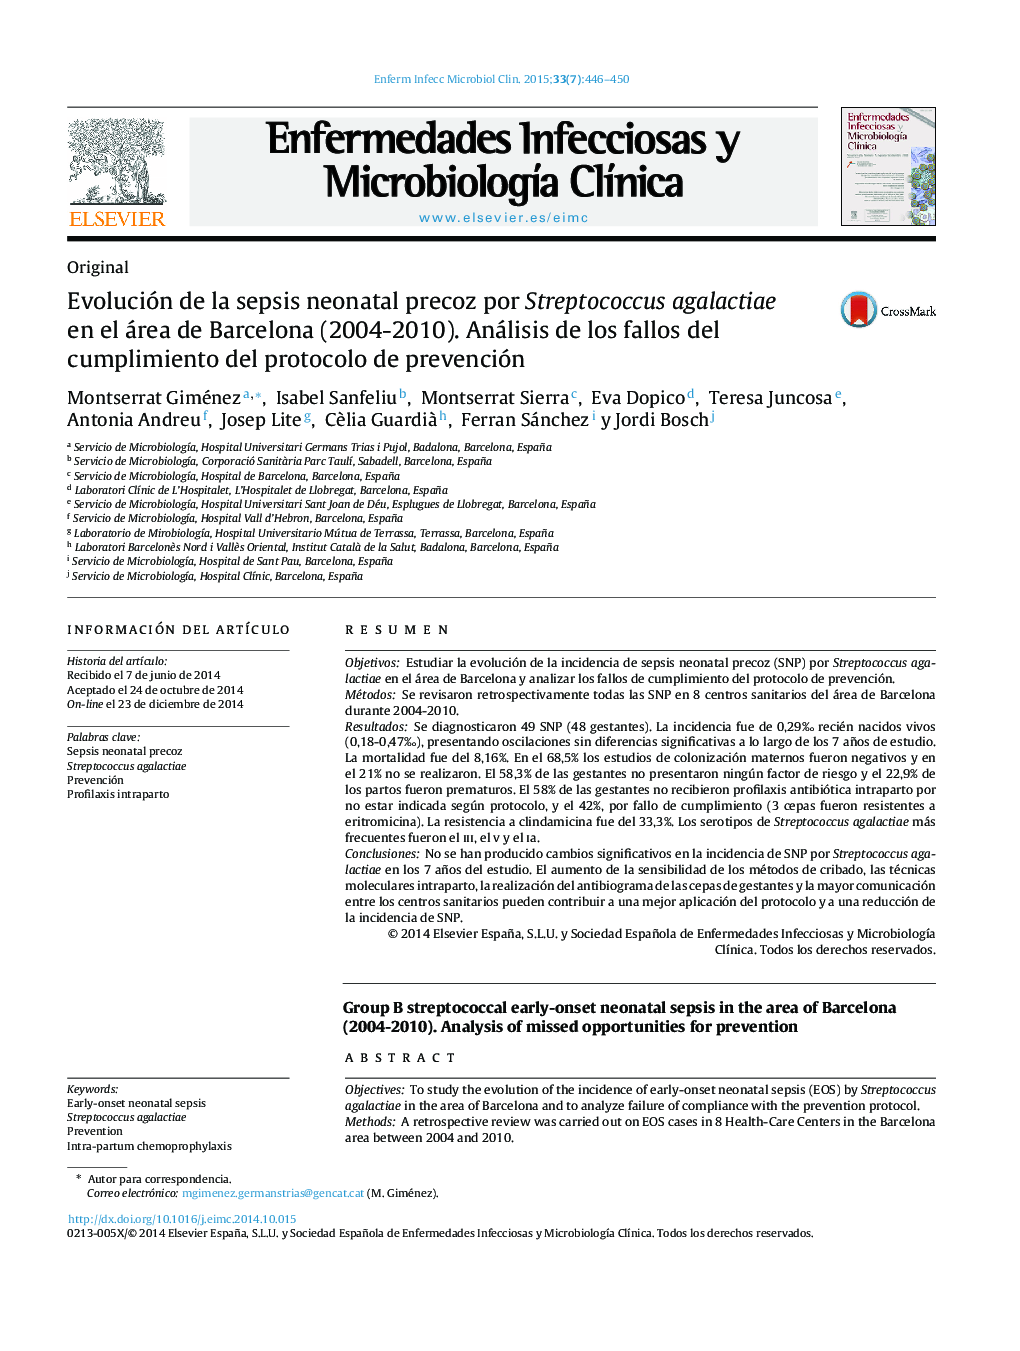 تکامل سپسیس زودرس نوزادان ناشی از استرپتوکوک آگالاکتیا در ناحیه بارسلون (2004-2010). بررسی خطاهای انطباق با پروتکل پیشگیری 